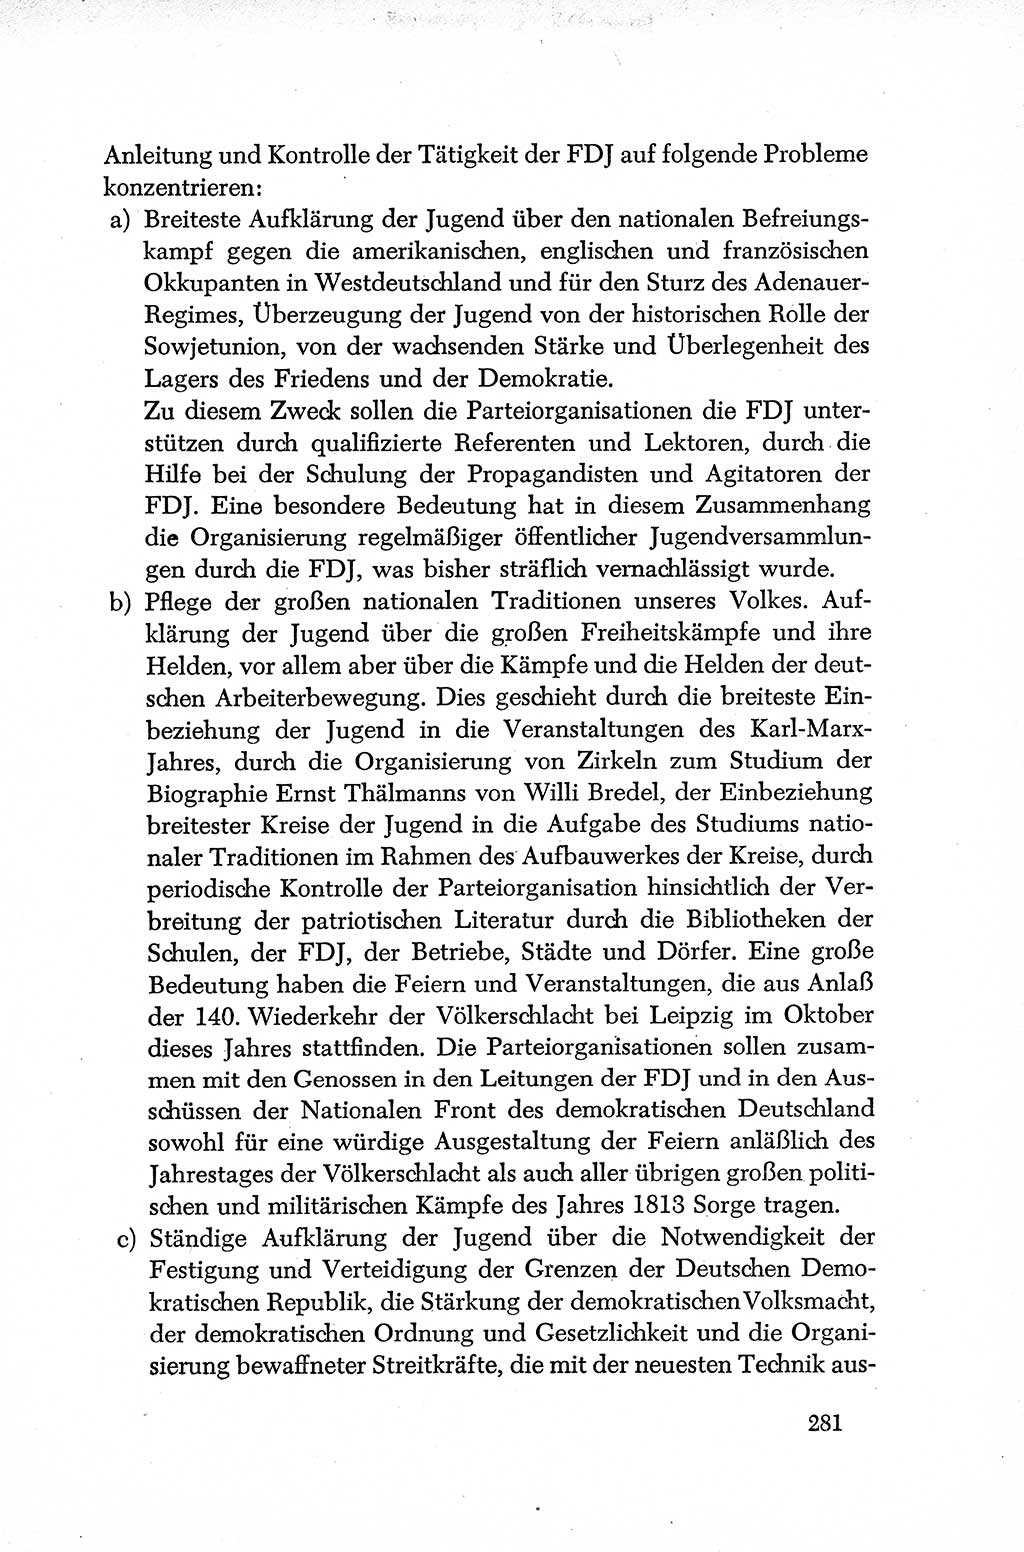 Dokumente der Sozialistischen Einheitspartei Deutschlands (SED) [Deutsche Demokratische Republik (DDR)] 1952-1953, Seite 281 (Dok. SED DDR 1952-1953, S. 281)